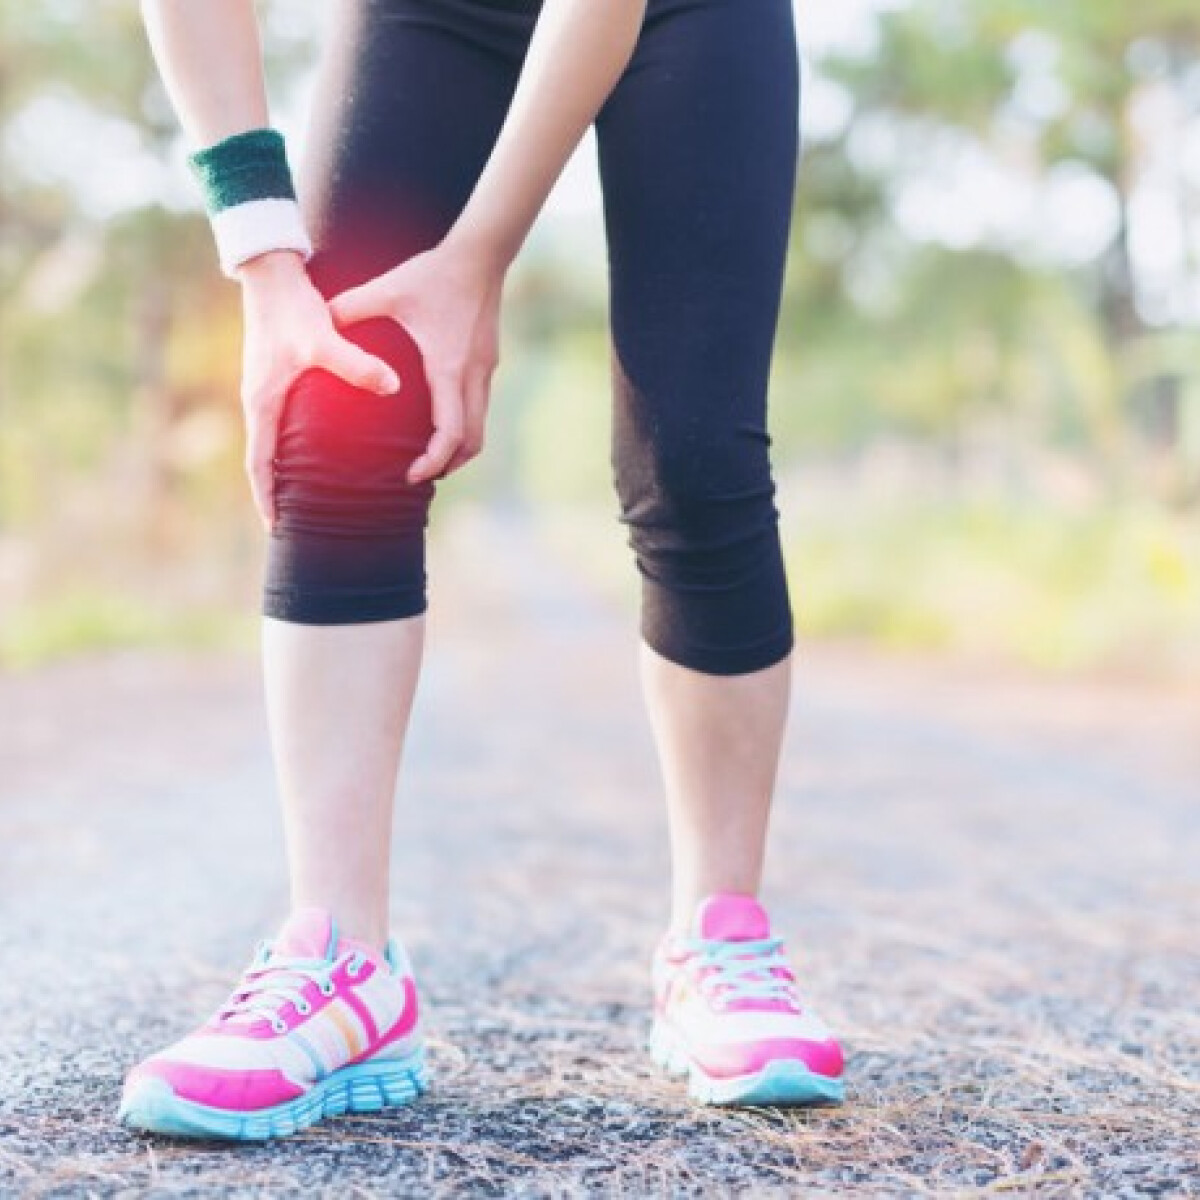 Erős fájdalom edzés közben? Edzőnk tippjei, hogy ne legyen nagyobb baj